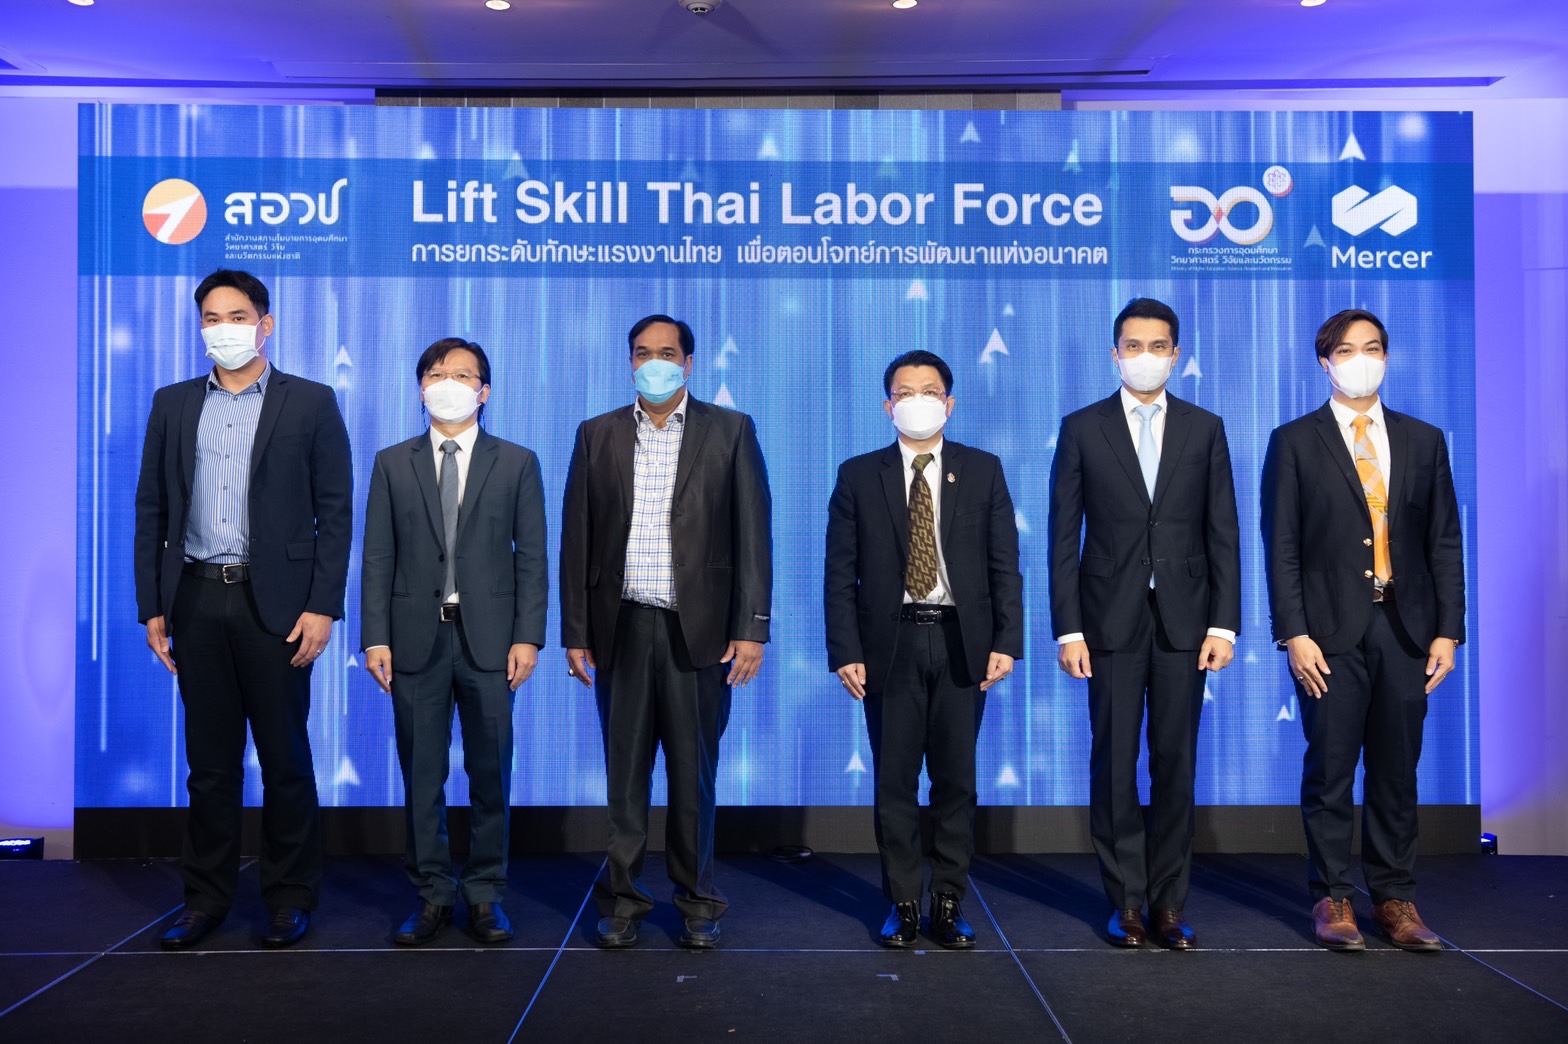 อว.ลุยยกระดับทักษะแรงงานไทย เพื่อตอบโจทย์การพัฒนาแห่งอนาคต “Lift Skill Thai Labor Force”